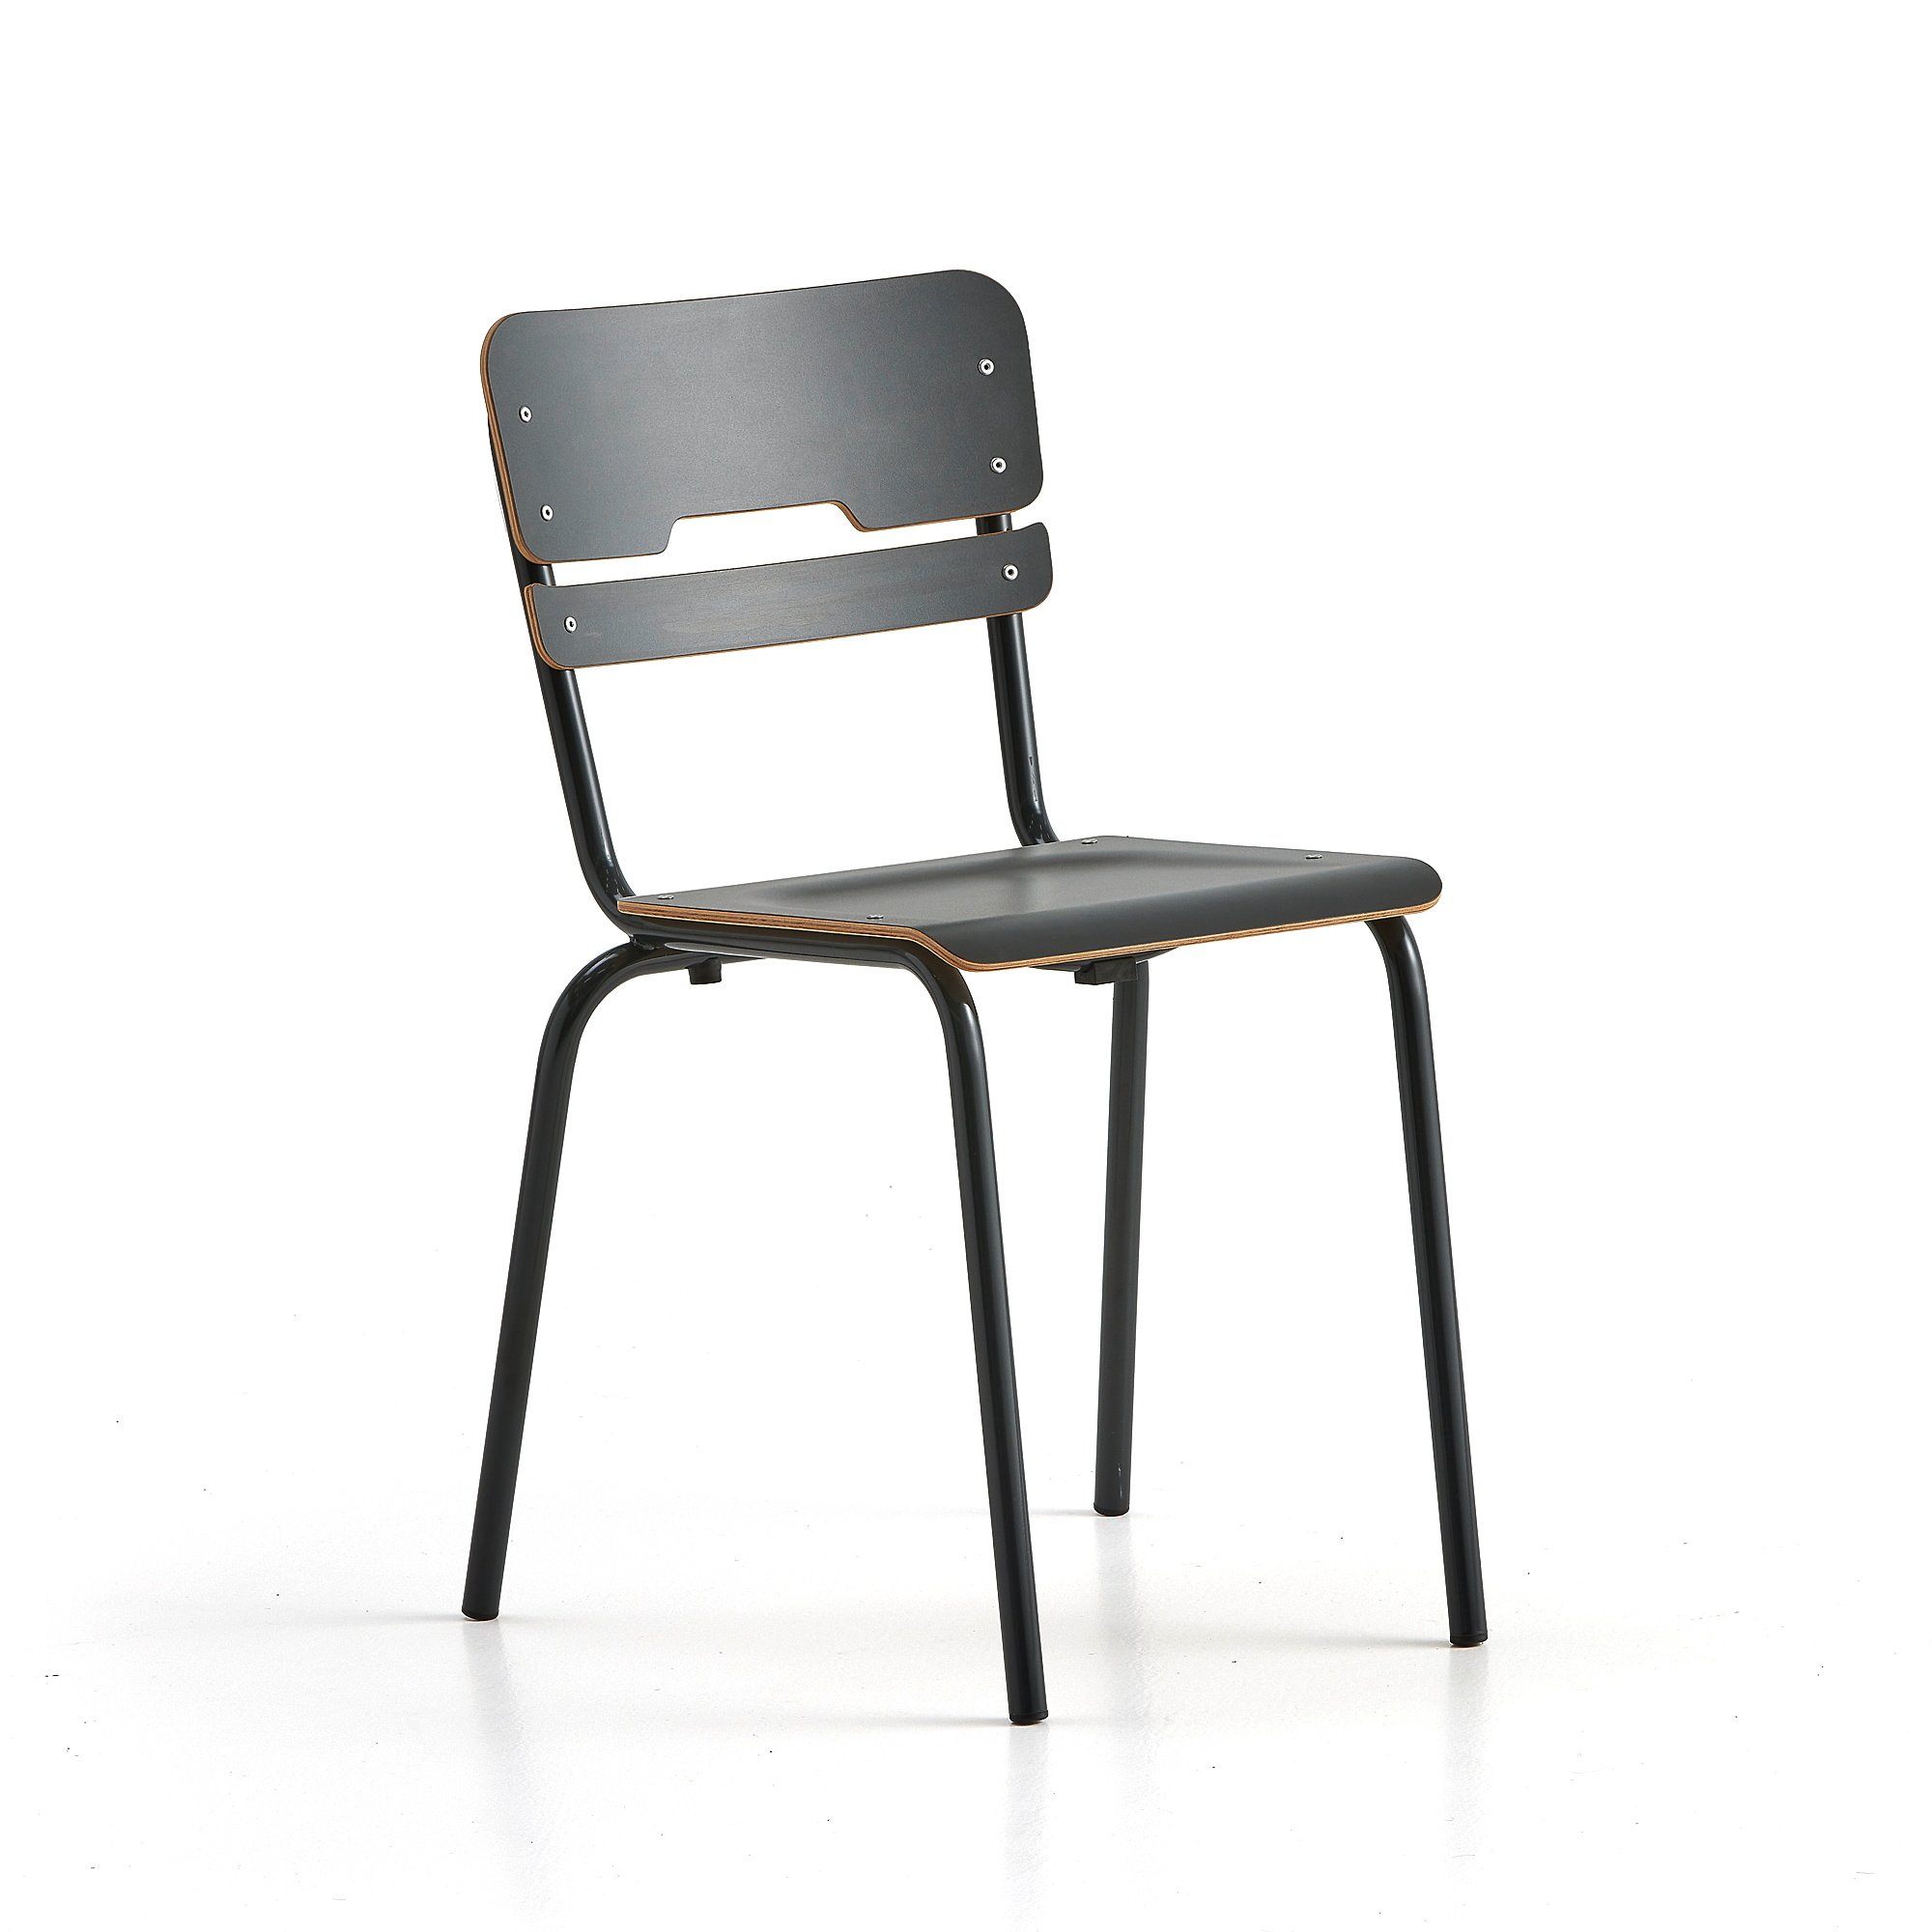 Školní židle SCIENTIA, sedák 360x360 mm, výška 460 mm, antracitová/antracitová